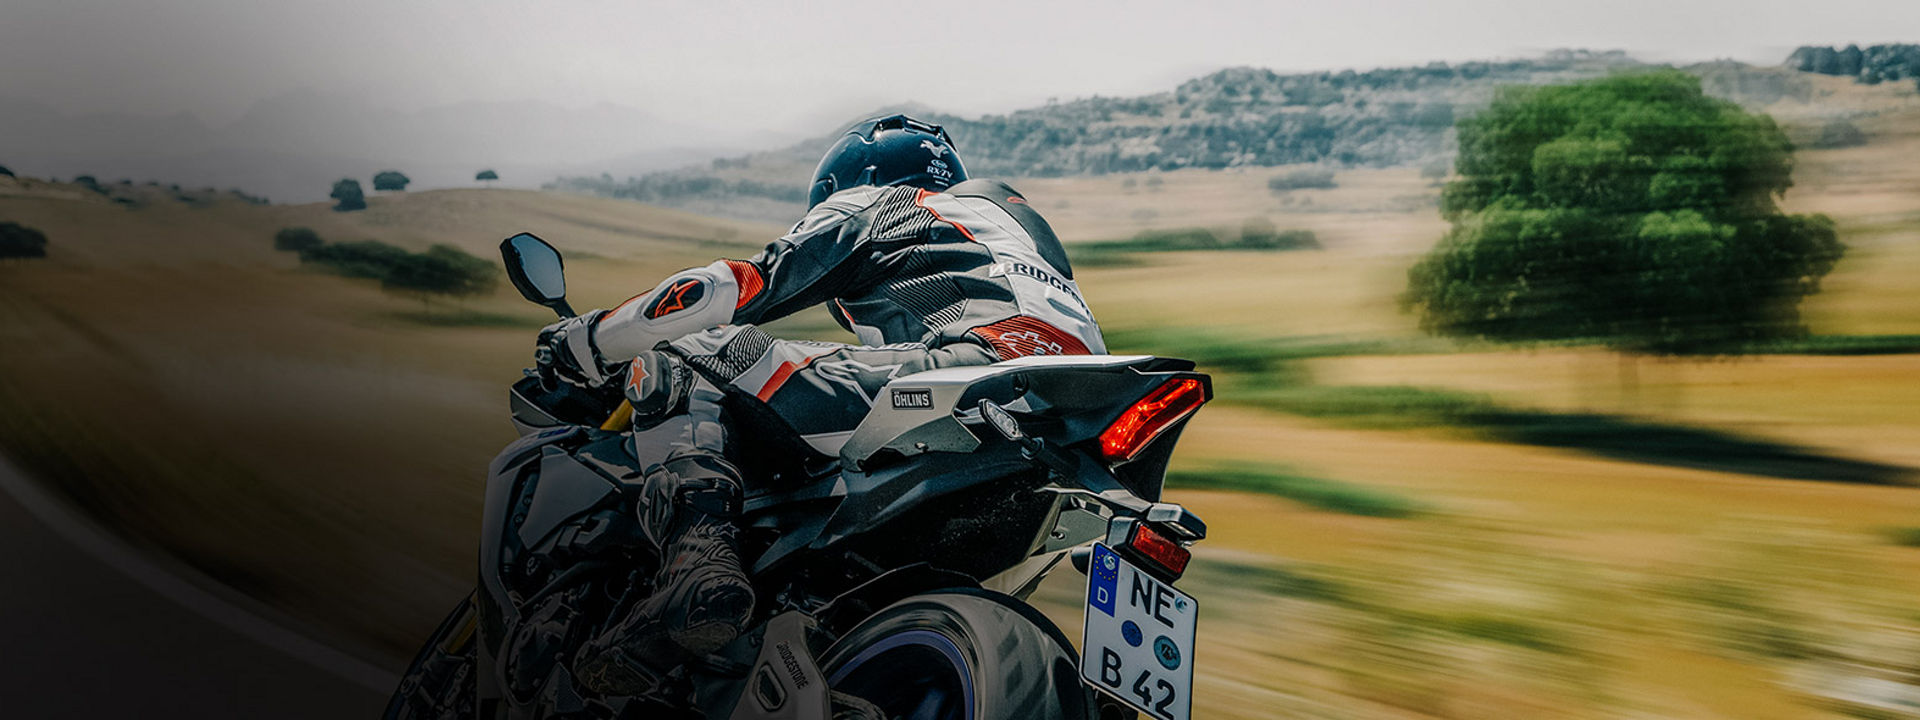 Esta imagem mostra um motociclista a conduzir a sua moto com pneus desportivos Bridgestone numa estrada.